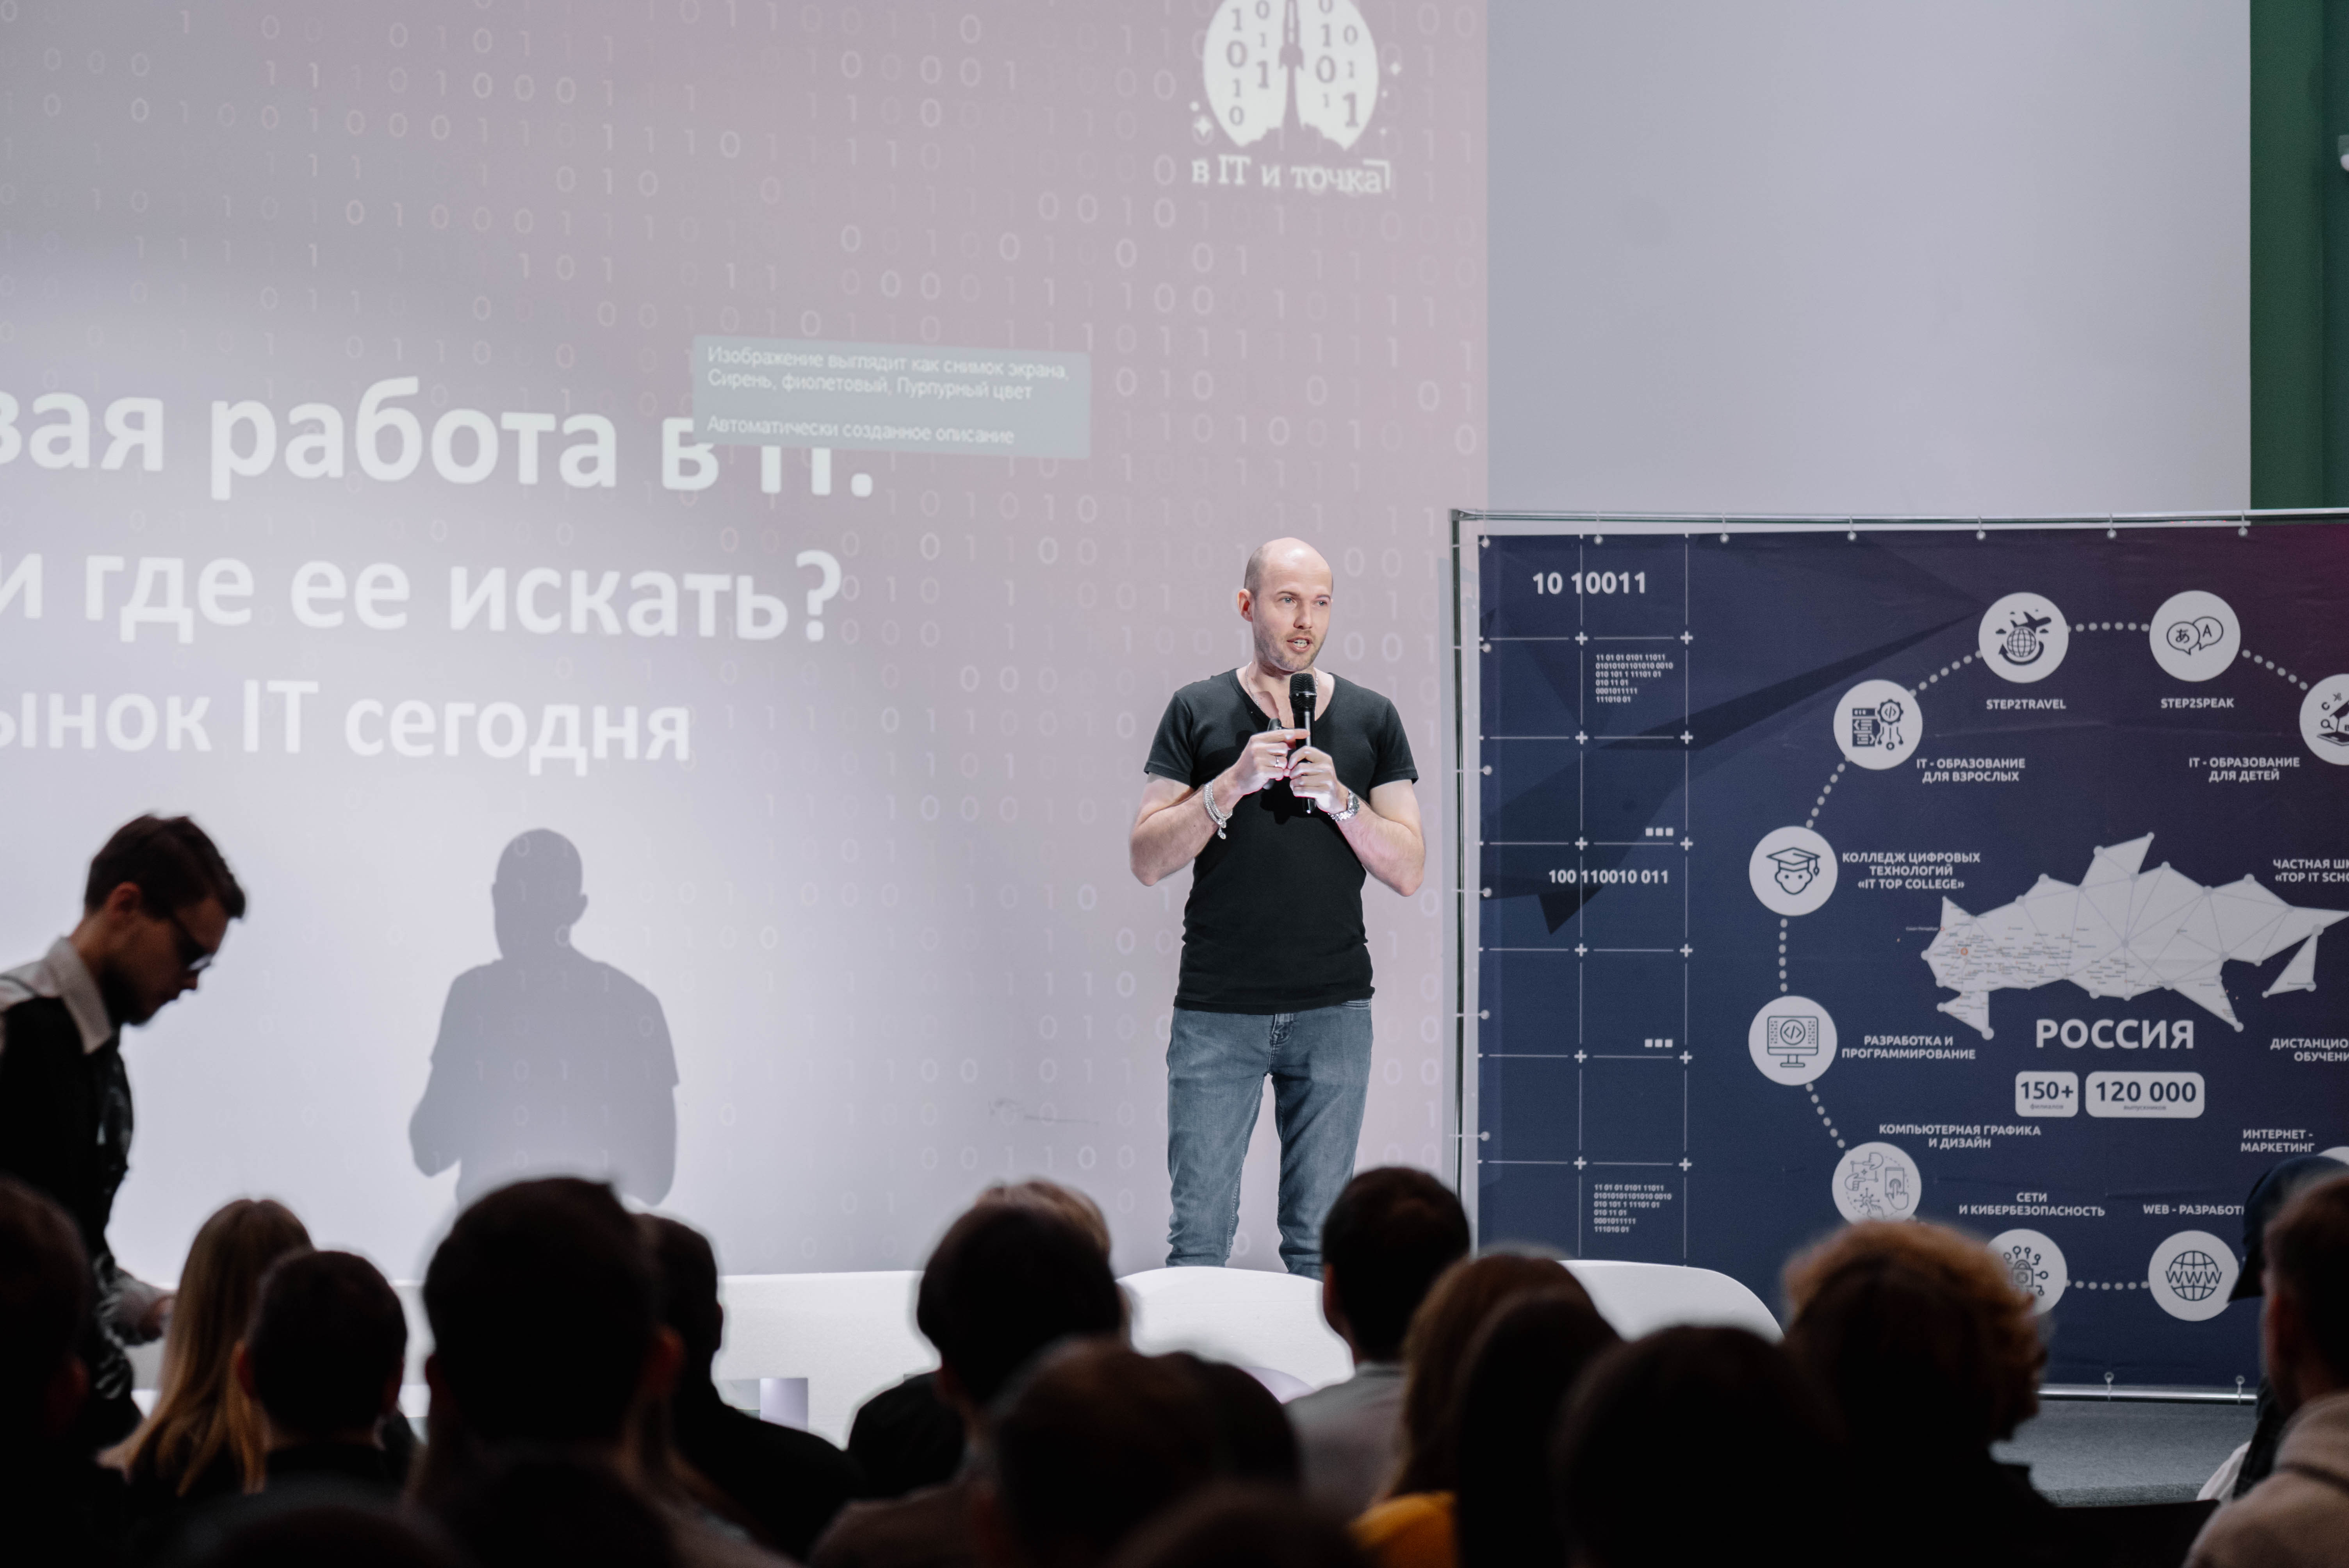 Игорь Позуметов — руководитель офиса «Neoflex», соорганизатор сообщества «IT-52», создатель портала «ITGORKY»